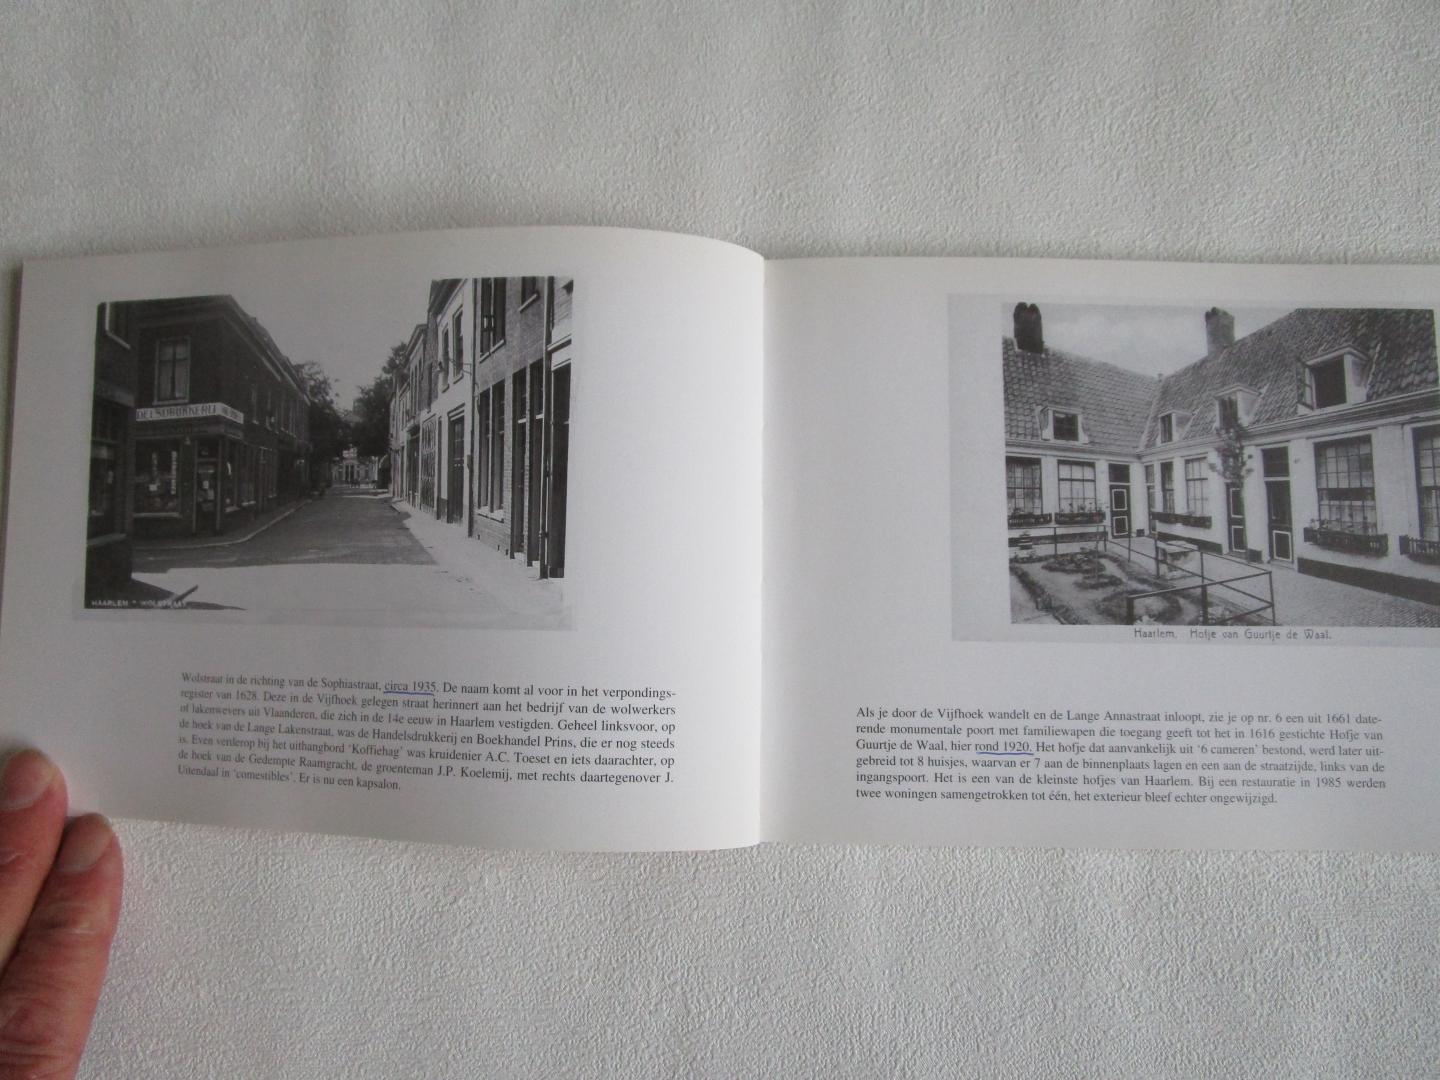 Peetoom, Lenie  ( foto's geselecteerd en van tekst voorzien) - ZO WAS HET; Haarlem;  deel 1, deel 2 en deel 3 (kompleet)